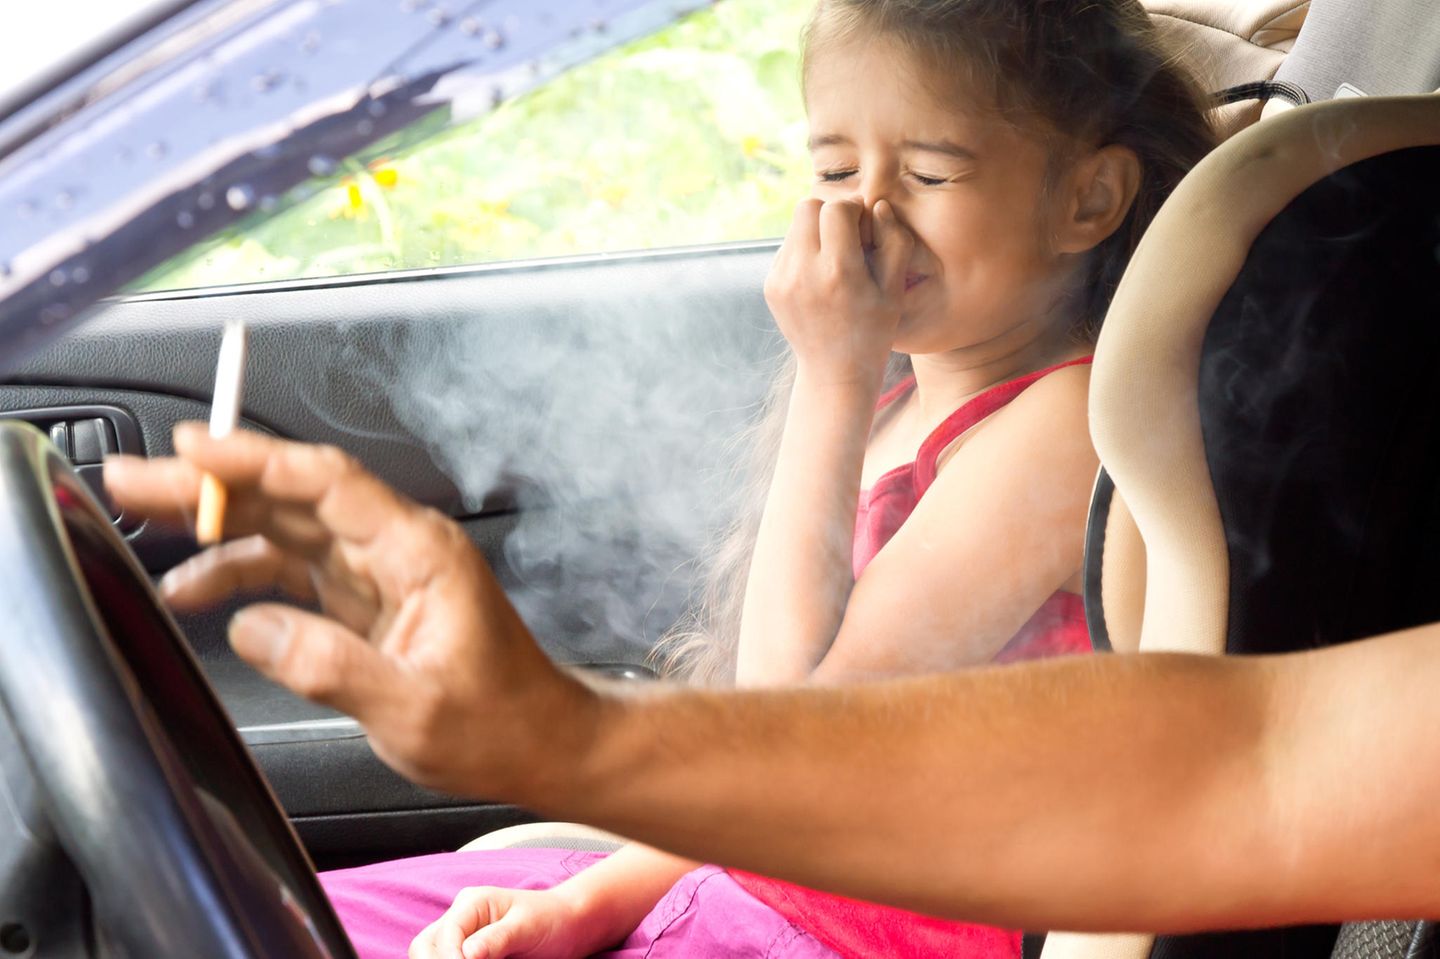 Rauchen im Auto: Frau raucht im Auto mit Kind an Bord